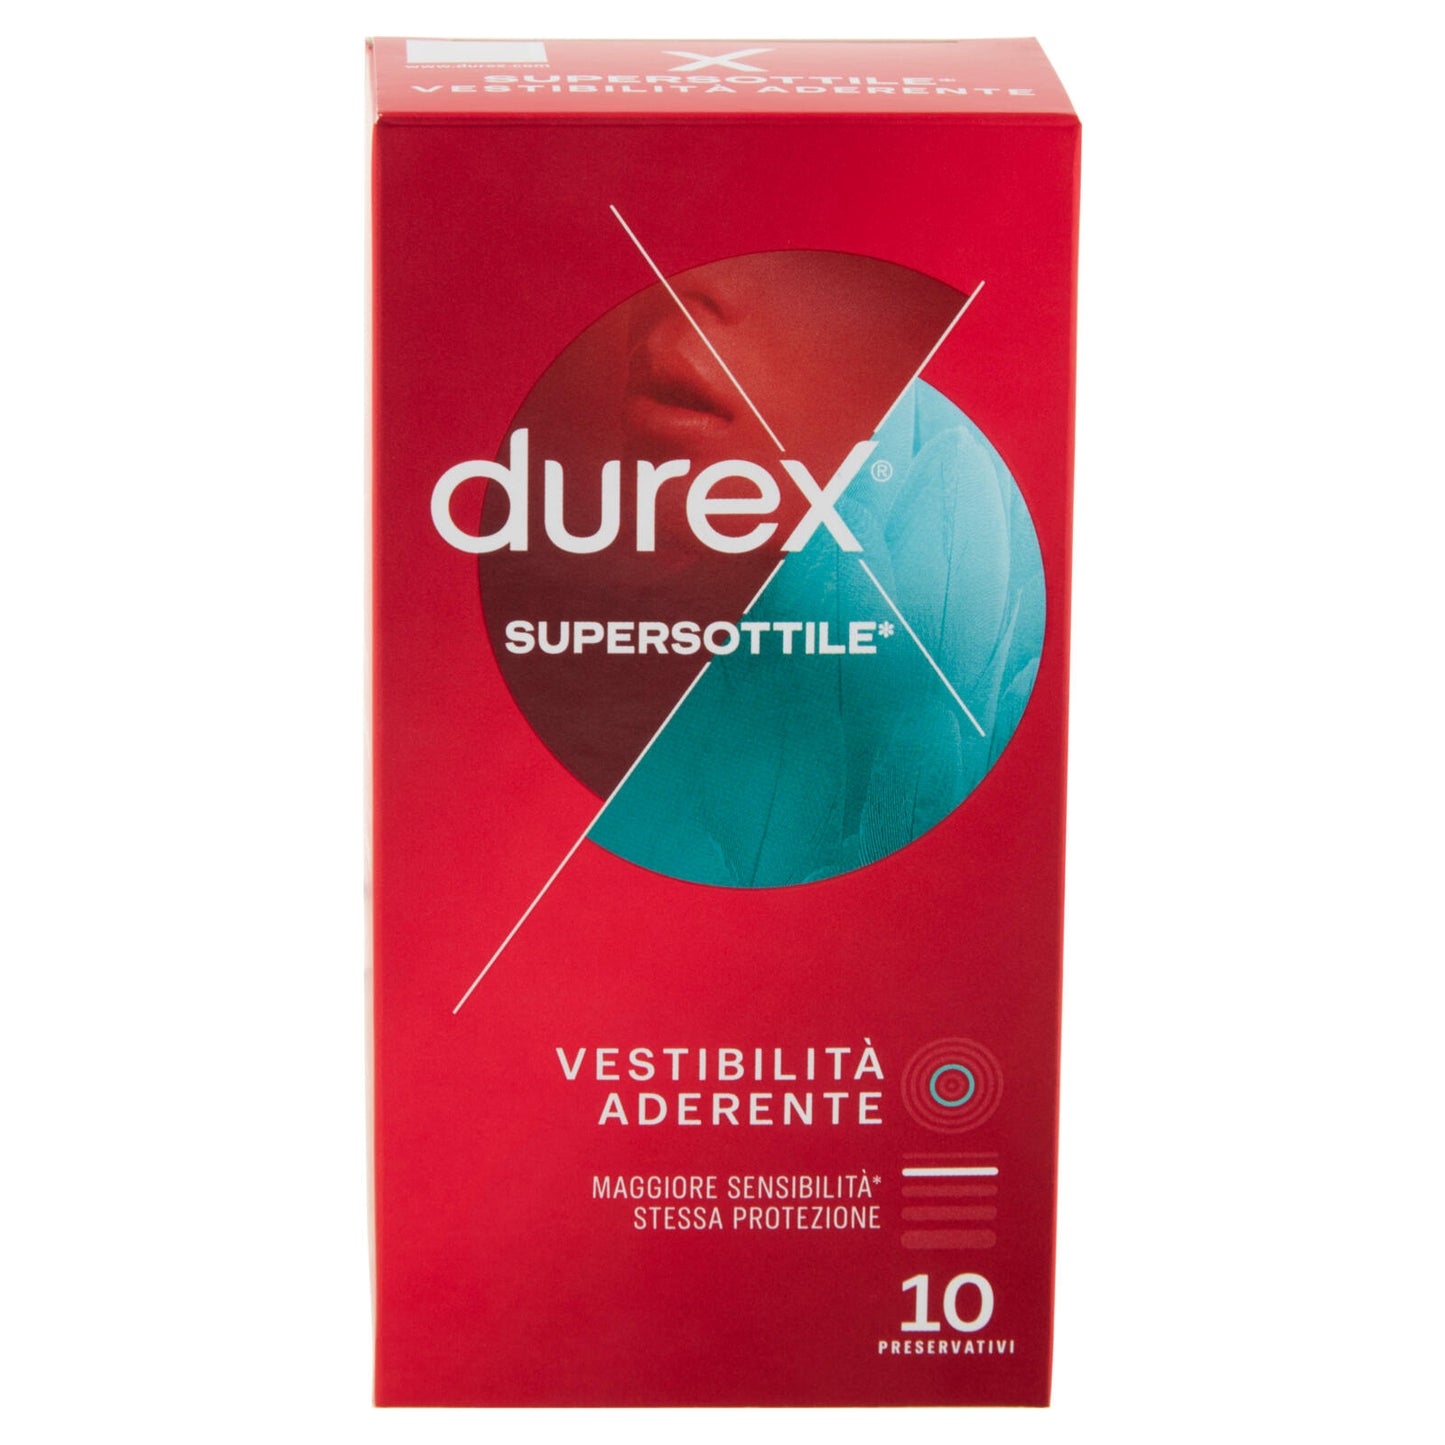 Durex Settebello Super Sottile Preservativi ad Alta Sensibilità , 10 Profilattici